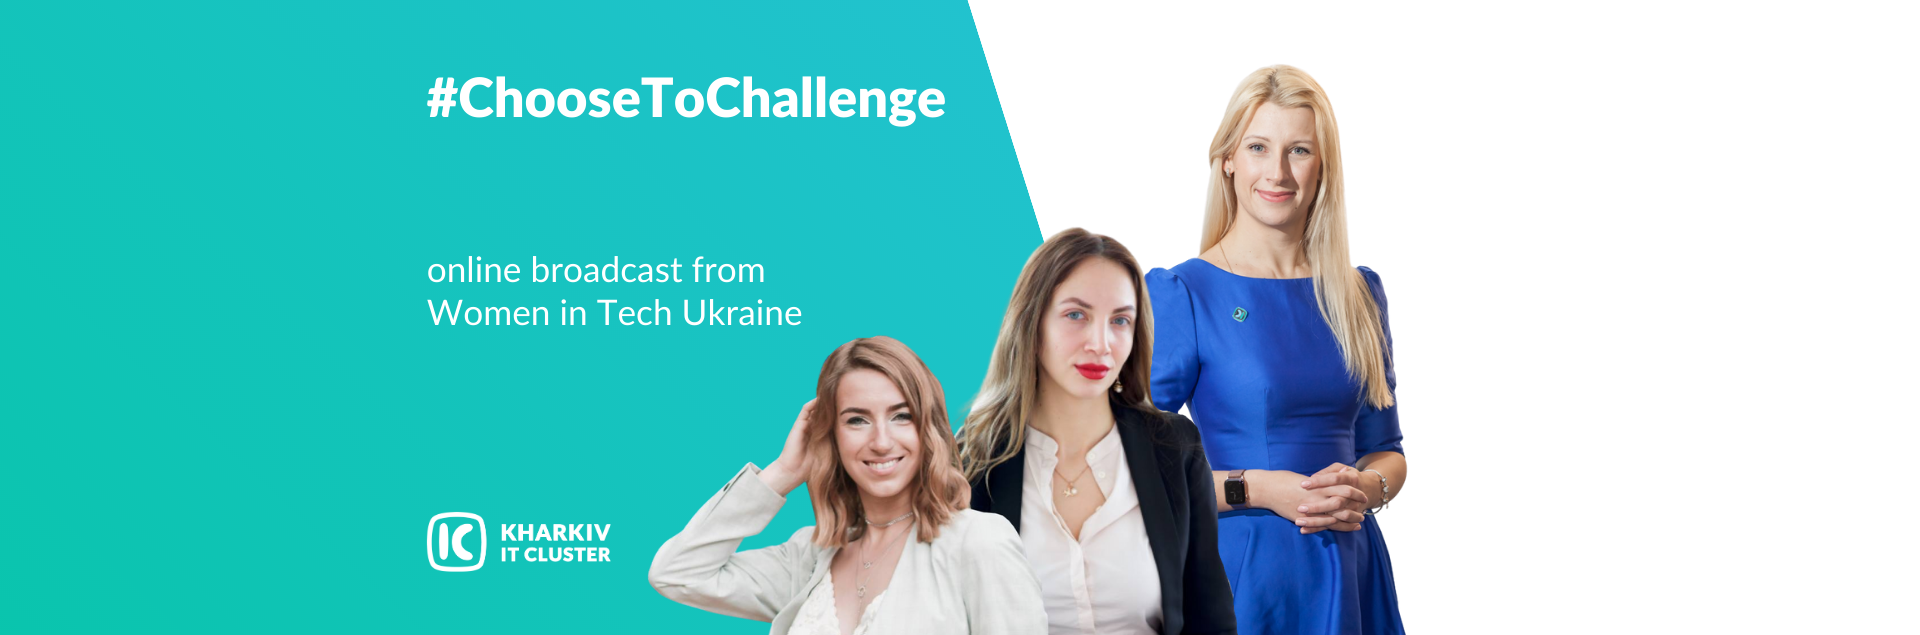 women in tech ukraine